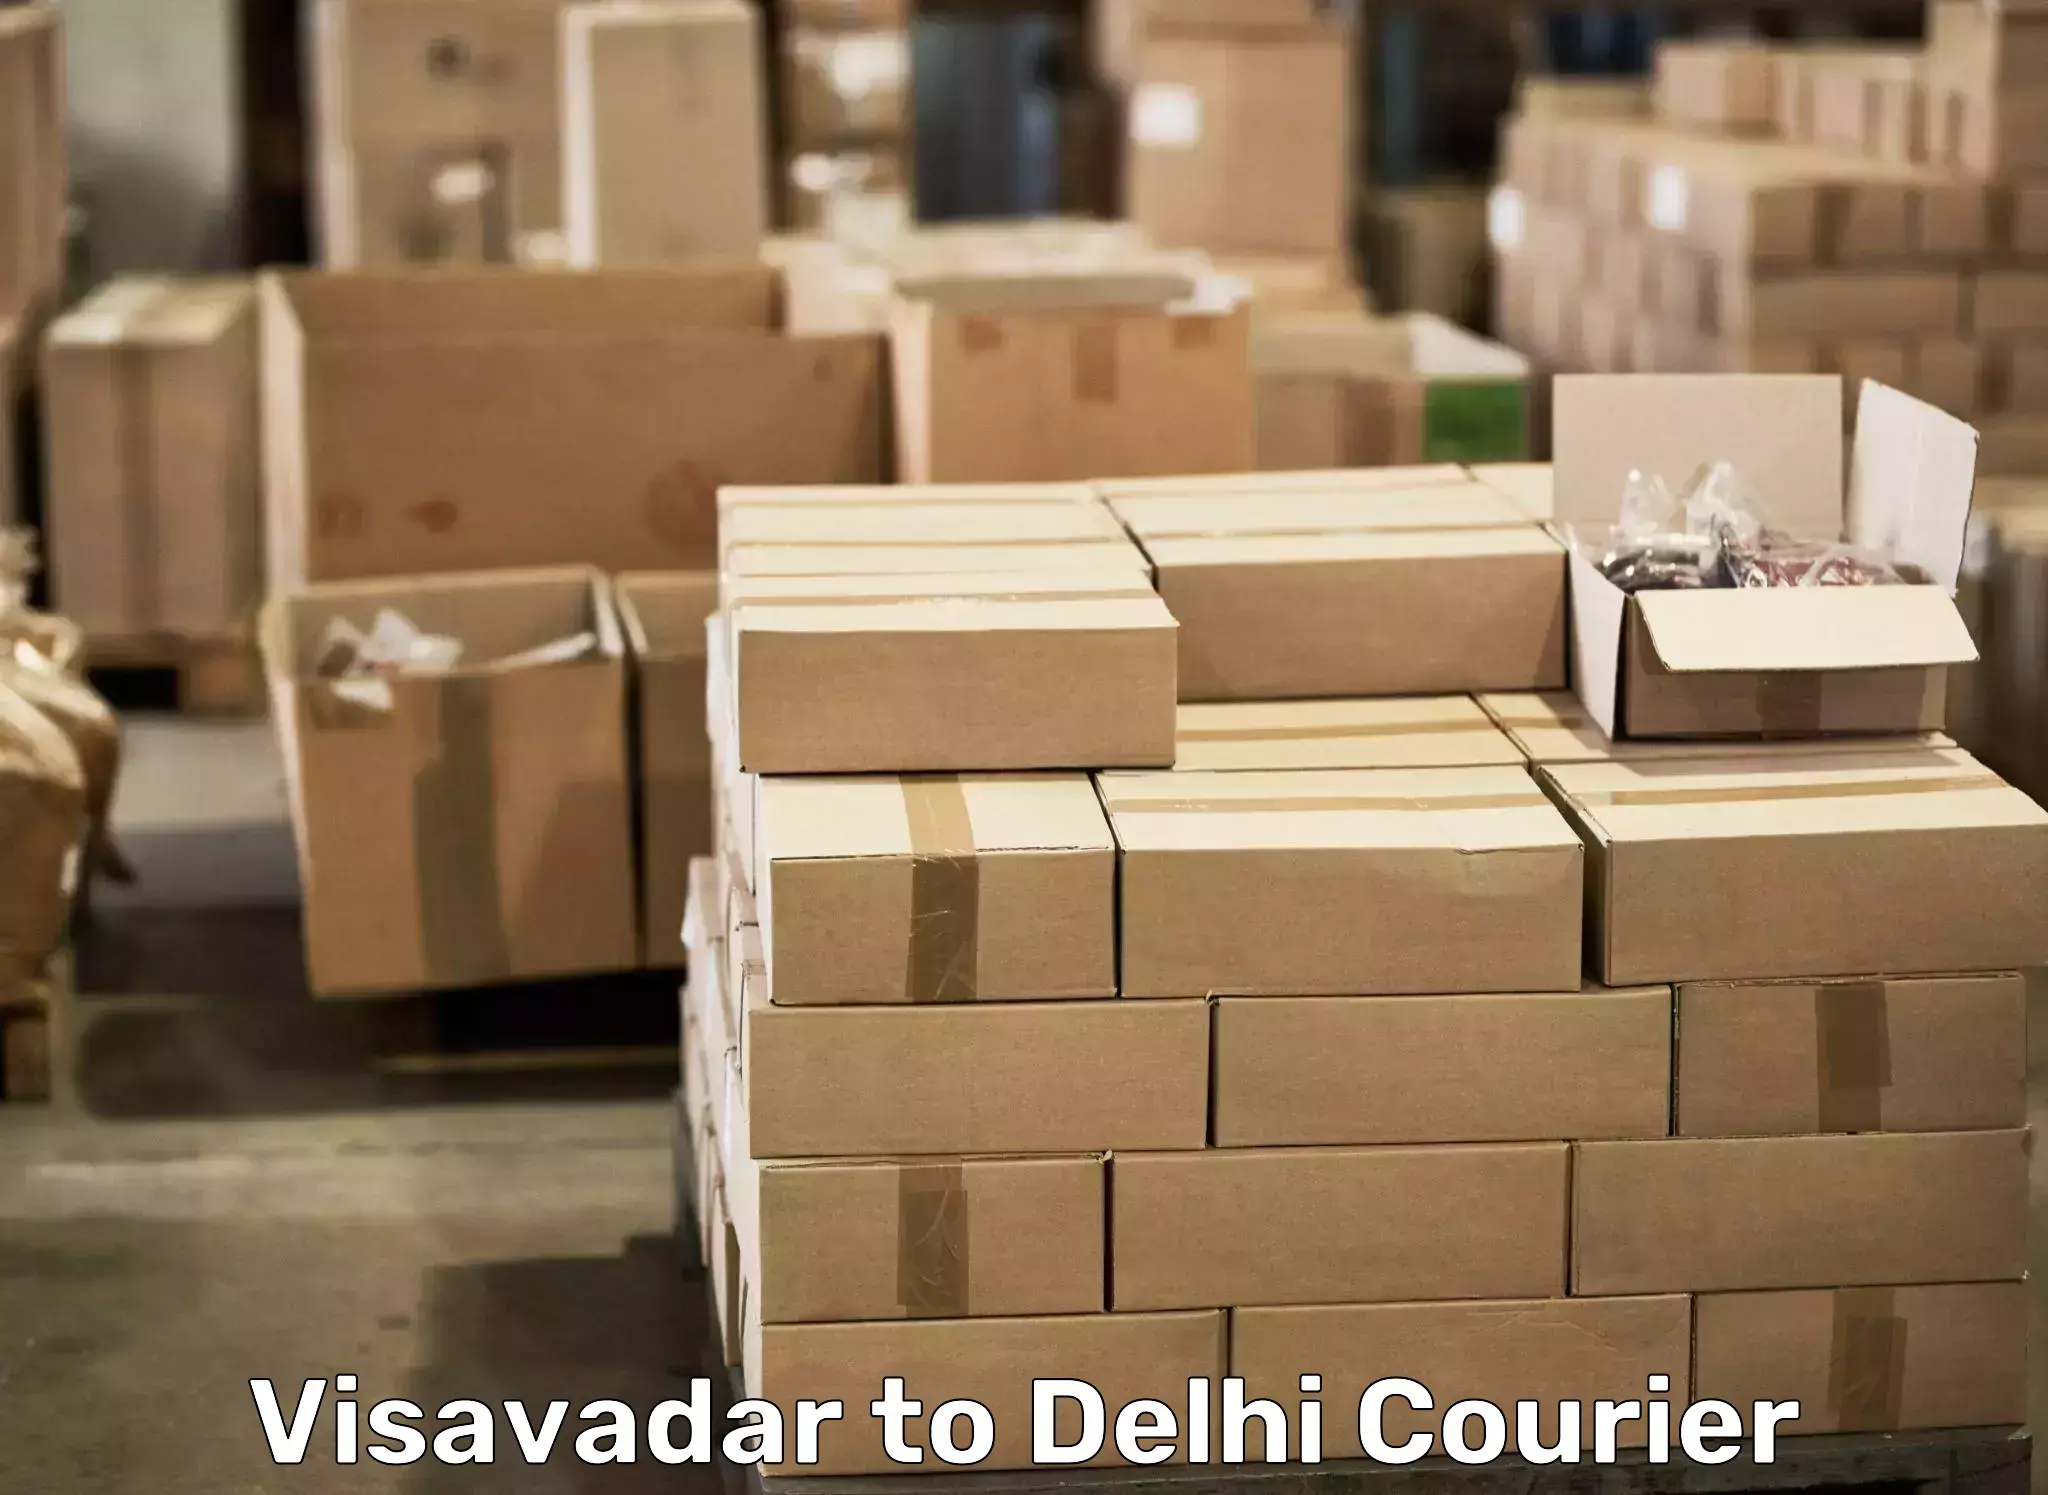 Door-to-door relocation services Visavadar to NCR